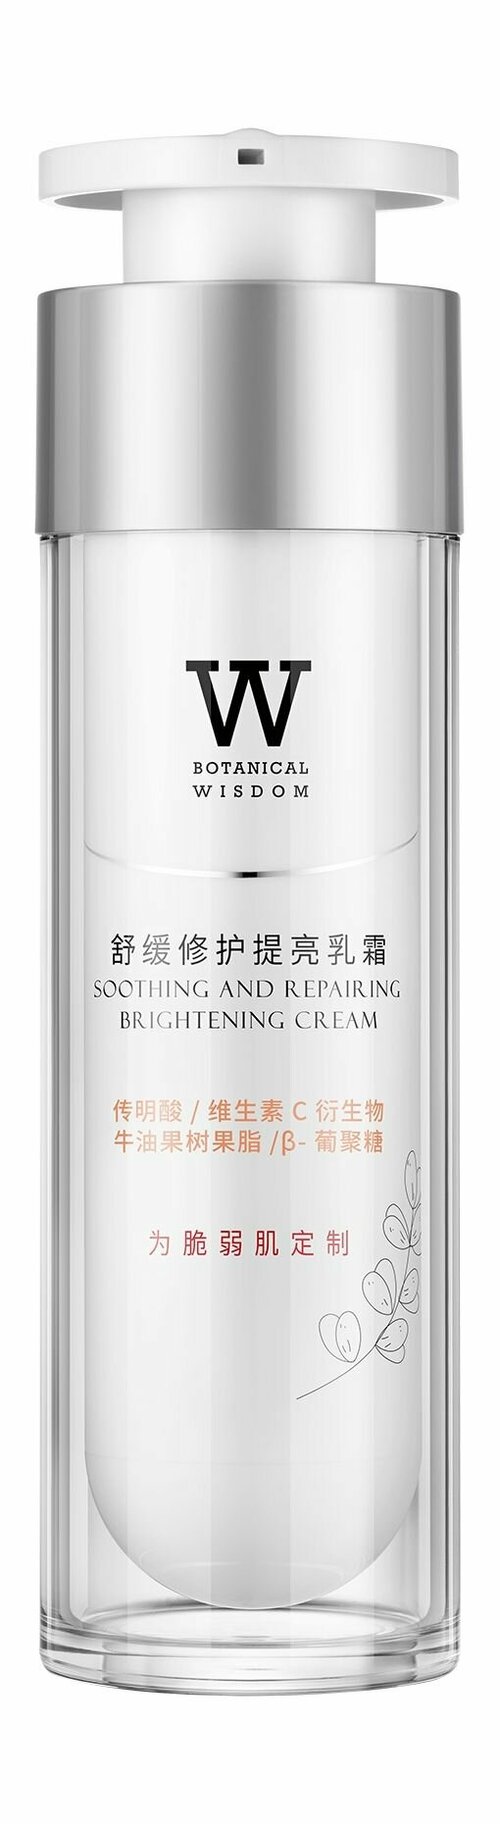 Успокаивающий крем для сияния чувствительной кожи лица / Botanical Wisdom Soothing and Repairing Brightening Cream